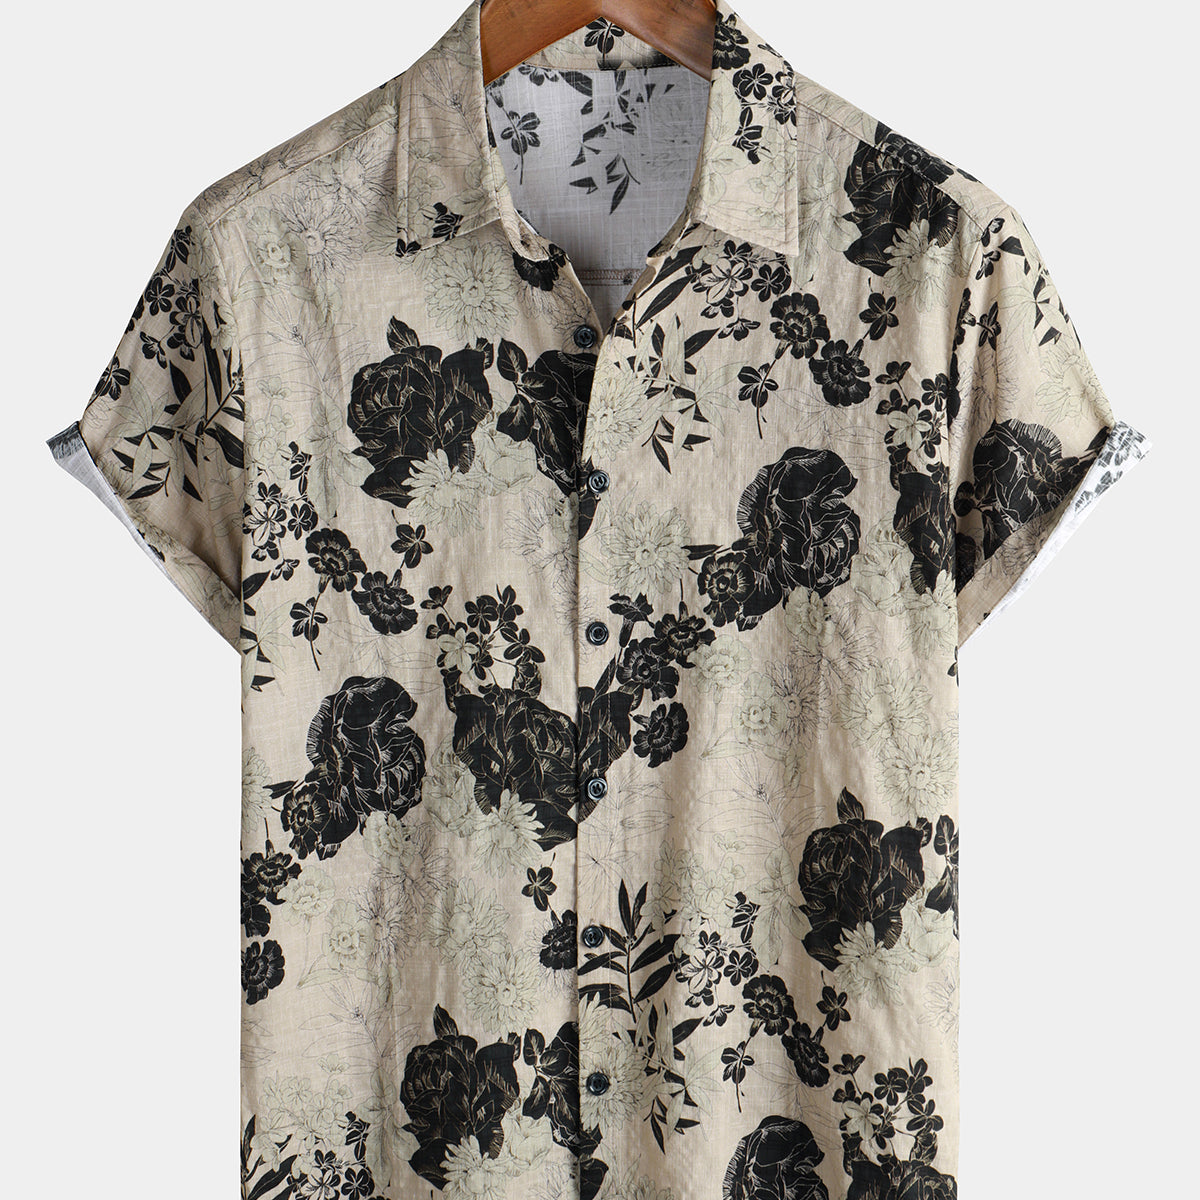 Men's Floral Vintage Short Sleeve Leisure Cotton Shirt